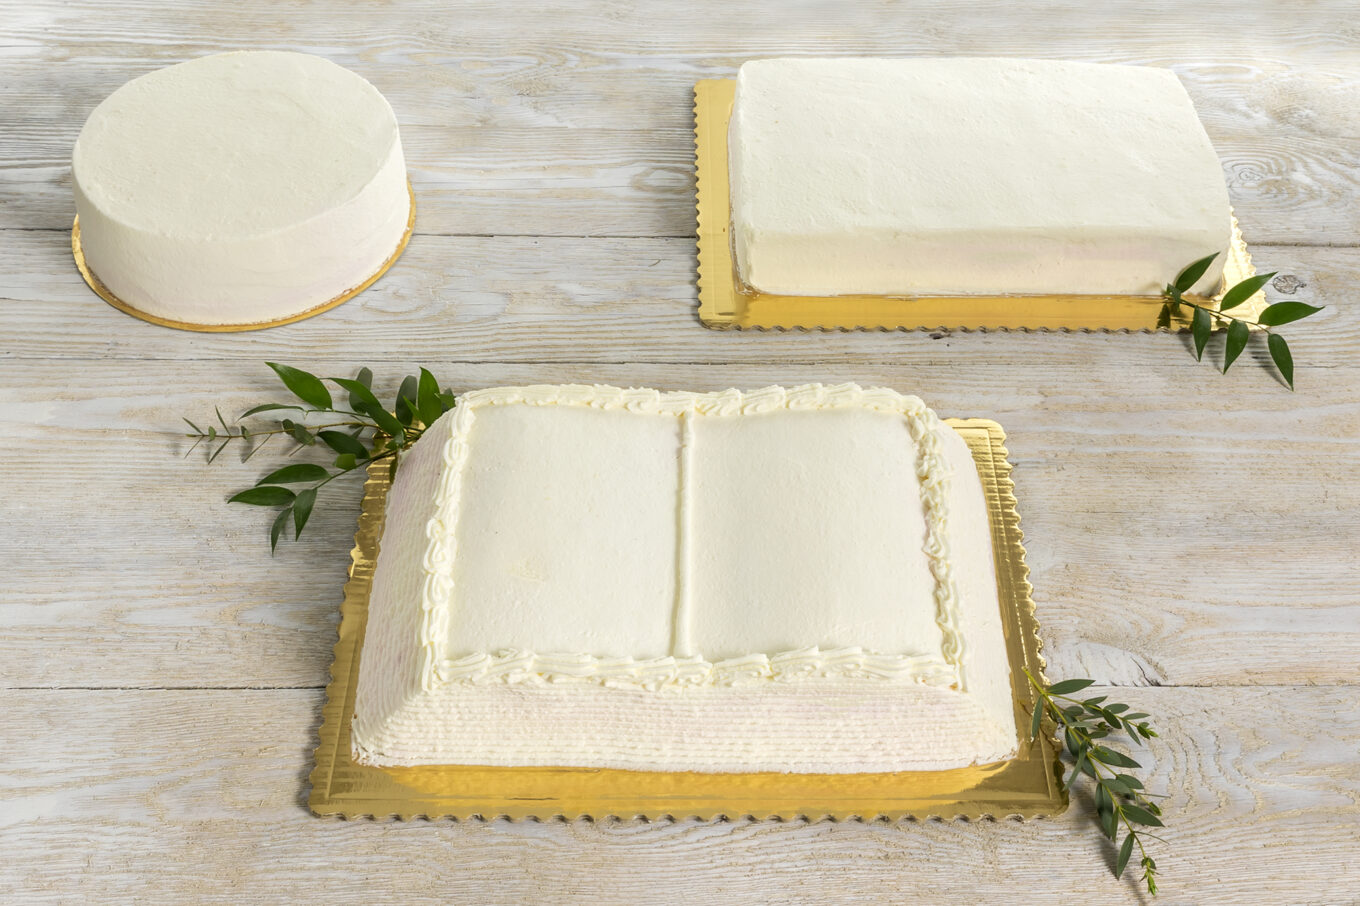 kształty tortów Cukiernia Jacek Placek to synonim smaku domowych ciast z naturalnych produktów.